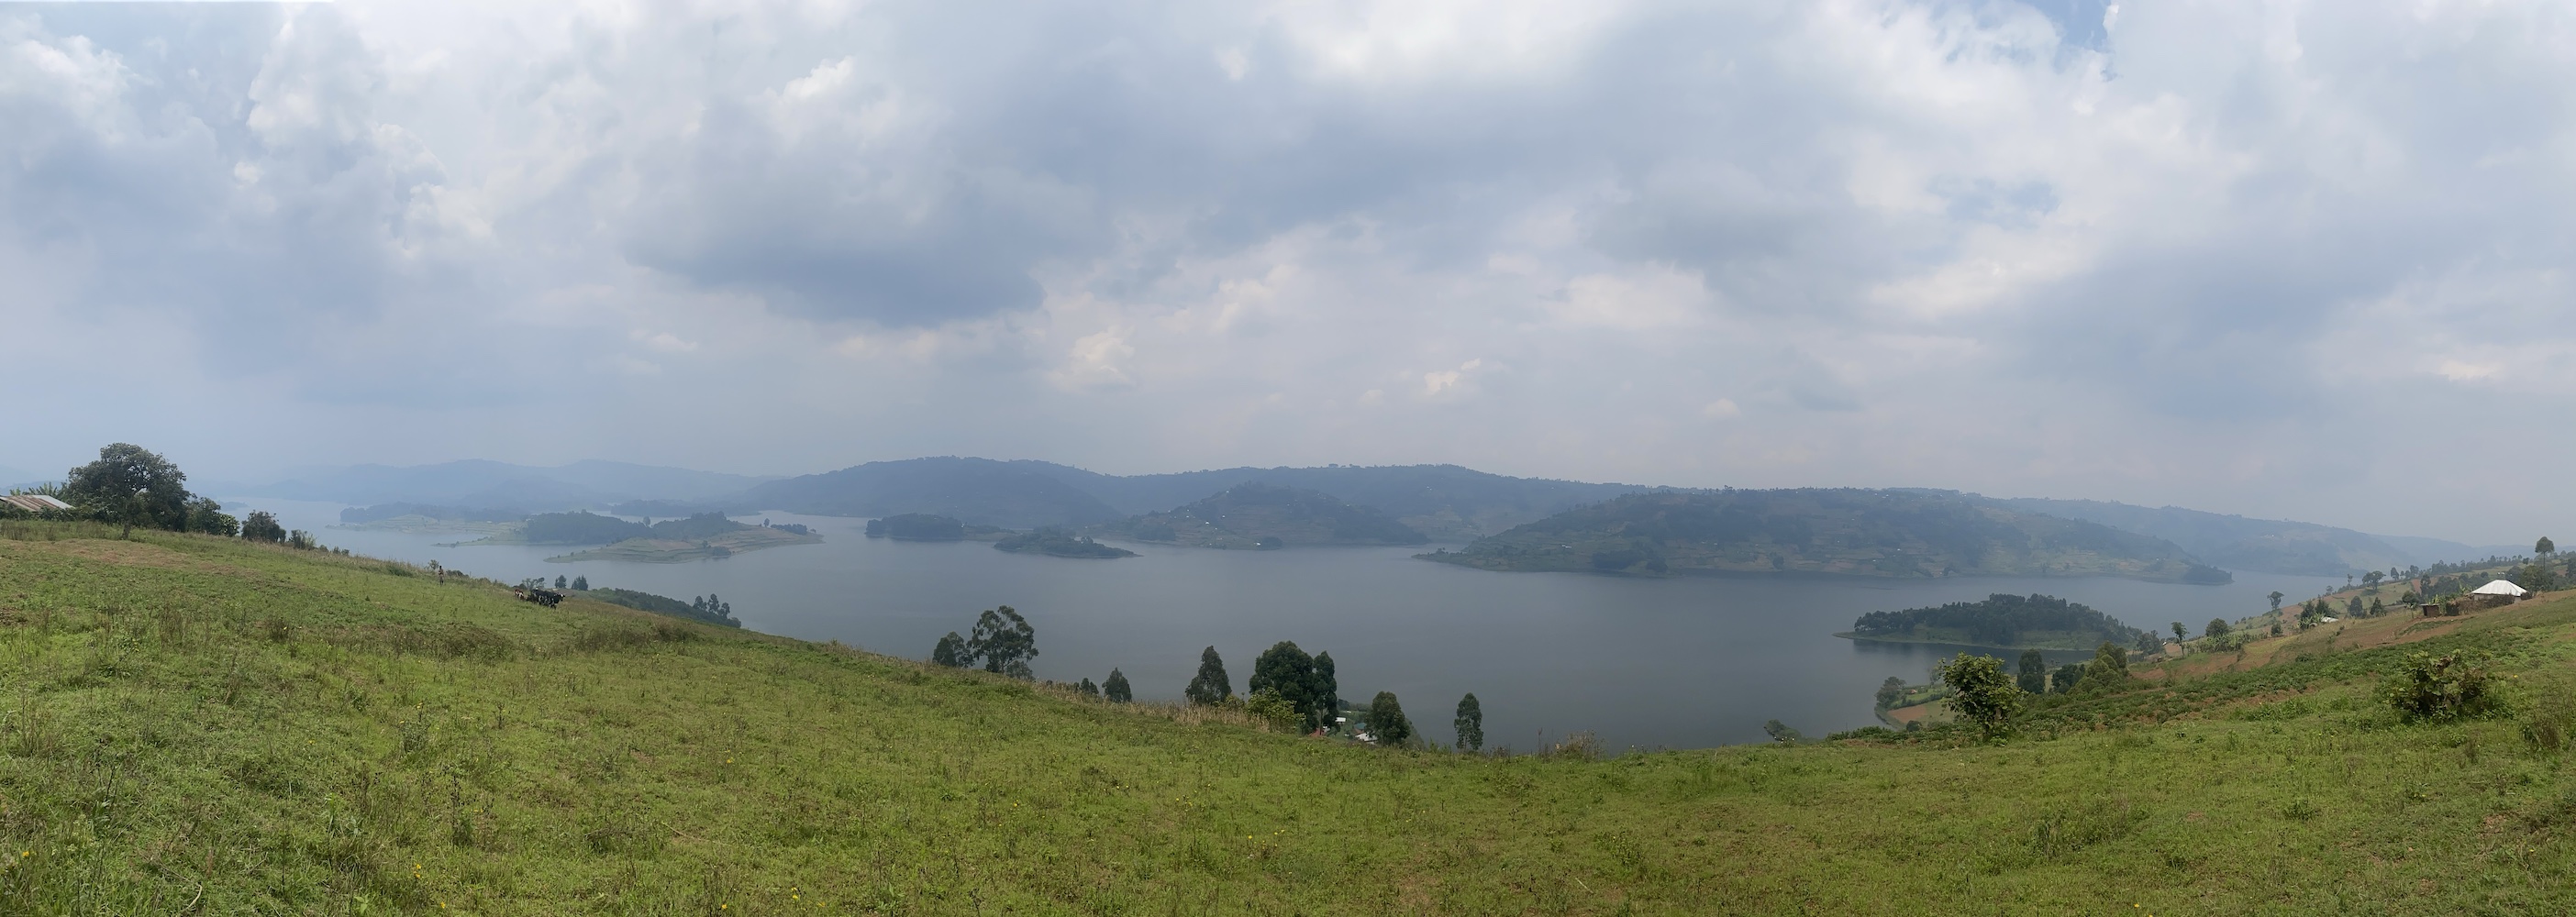 Lake Bunyonyi Panorama